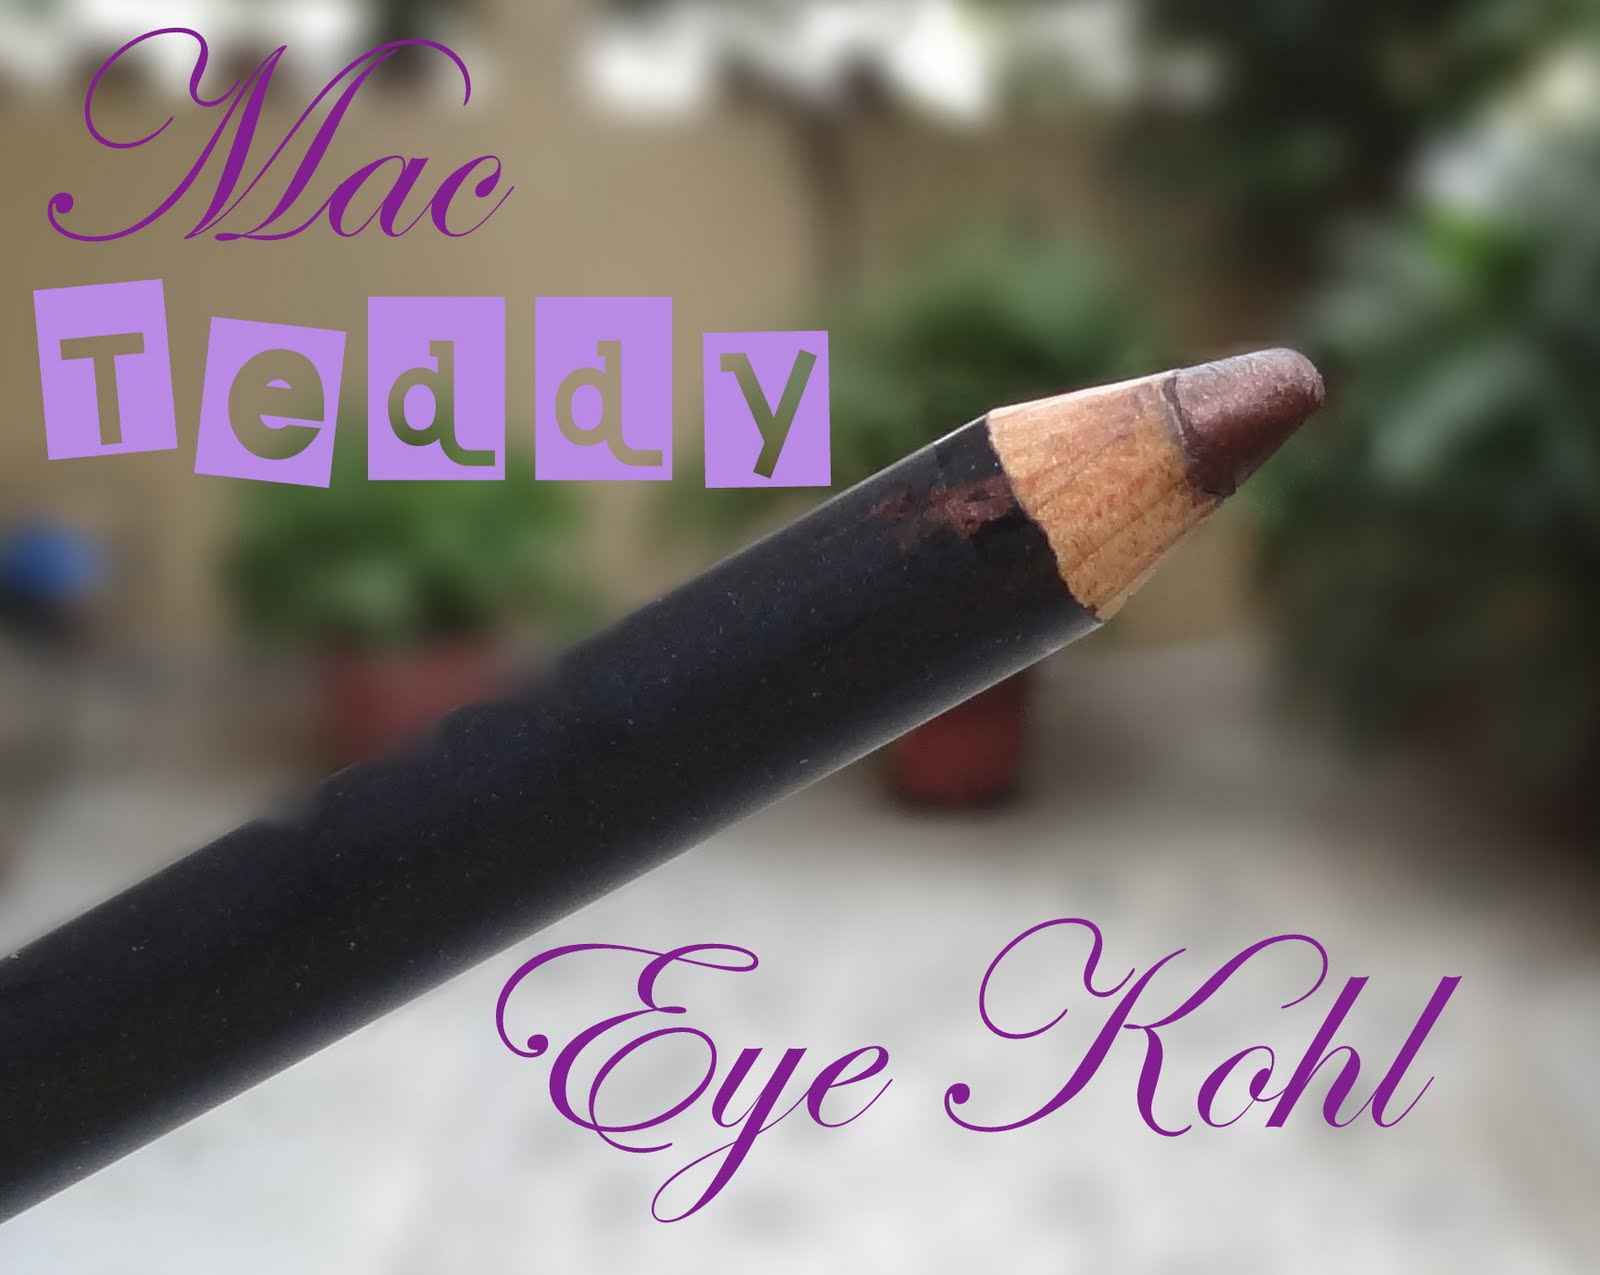 mac eyeliner pencil teddy - telenovisa43.com.